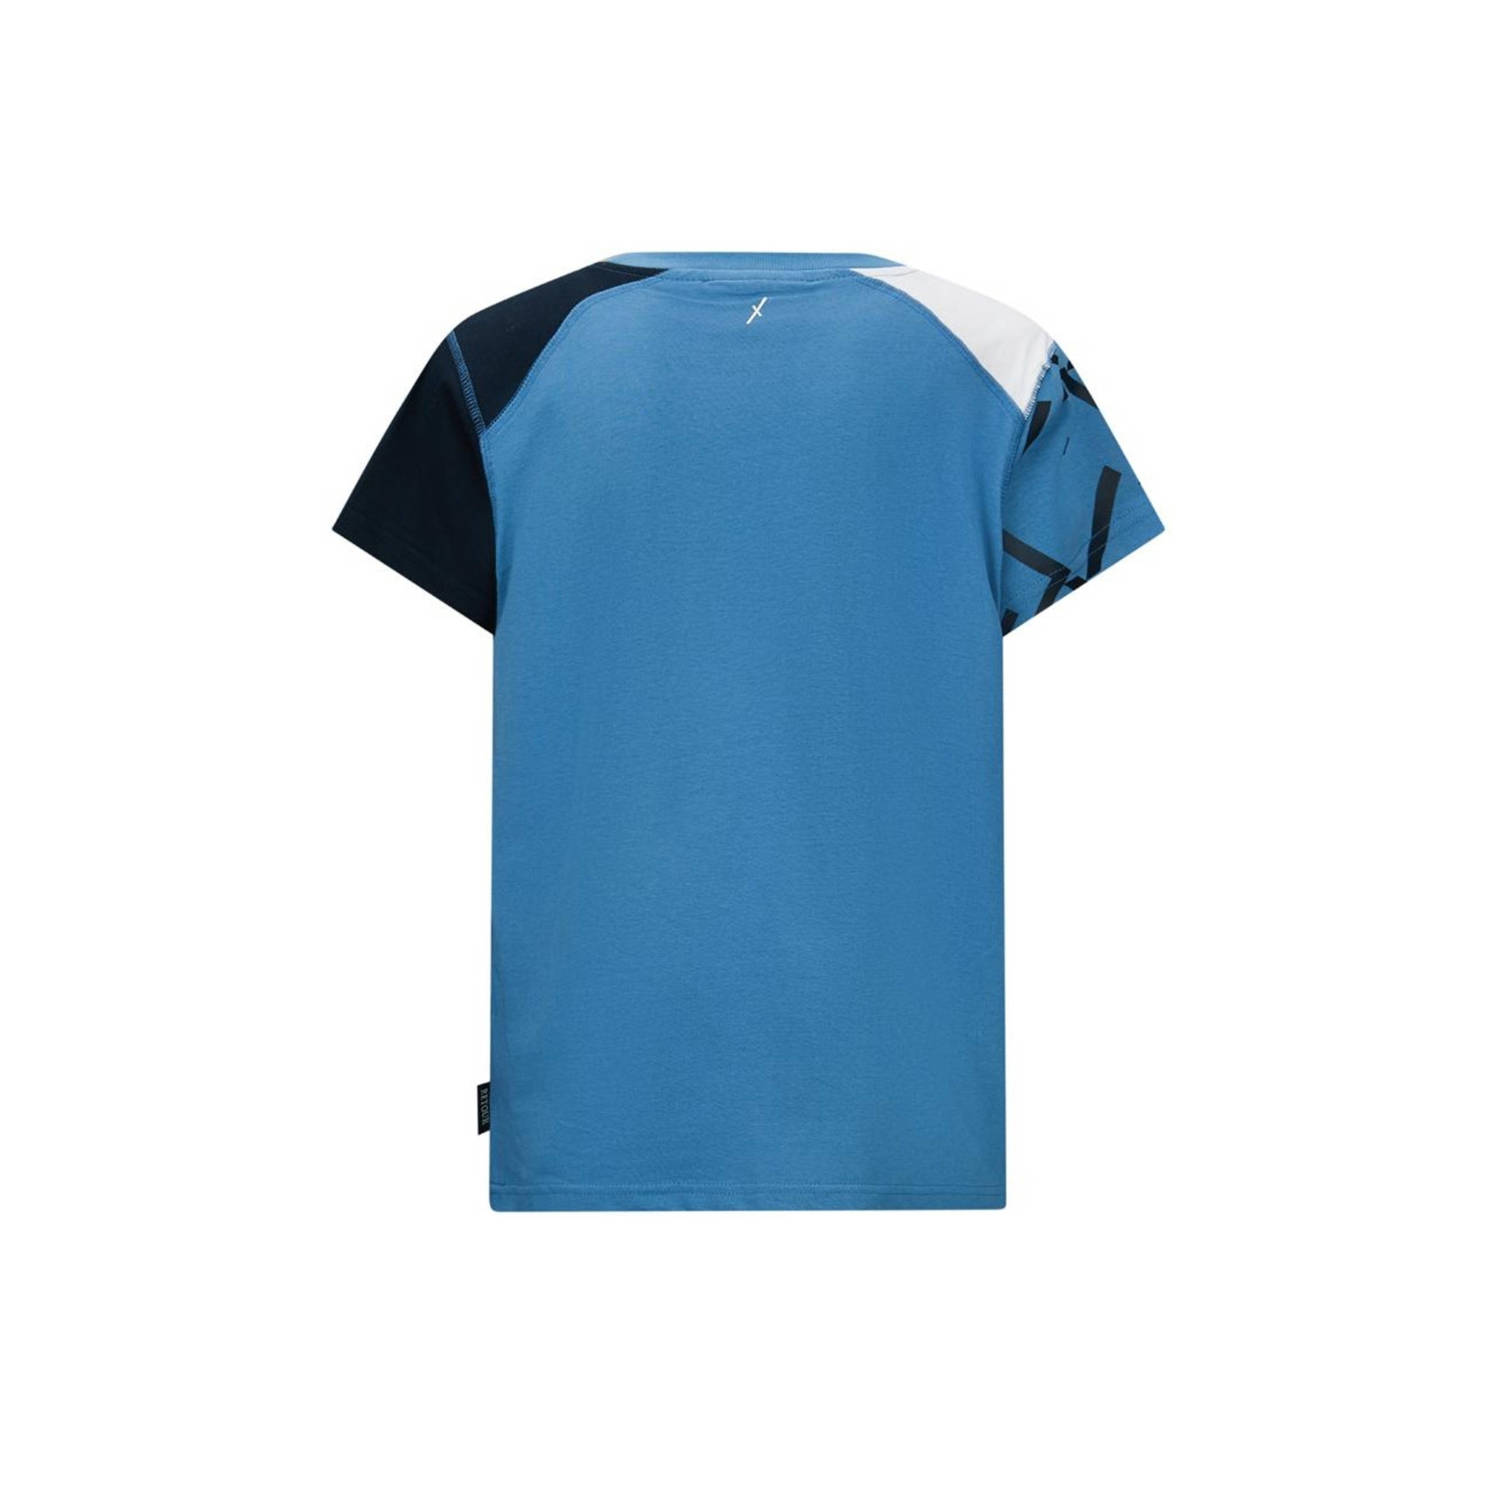 Retour Jeans Retour X Touzani T-shirt Goal met printopdruk blauw donkerblauw